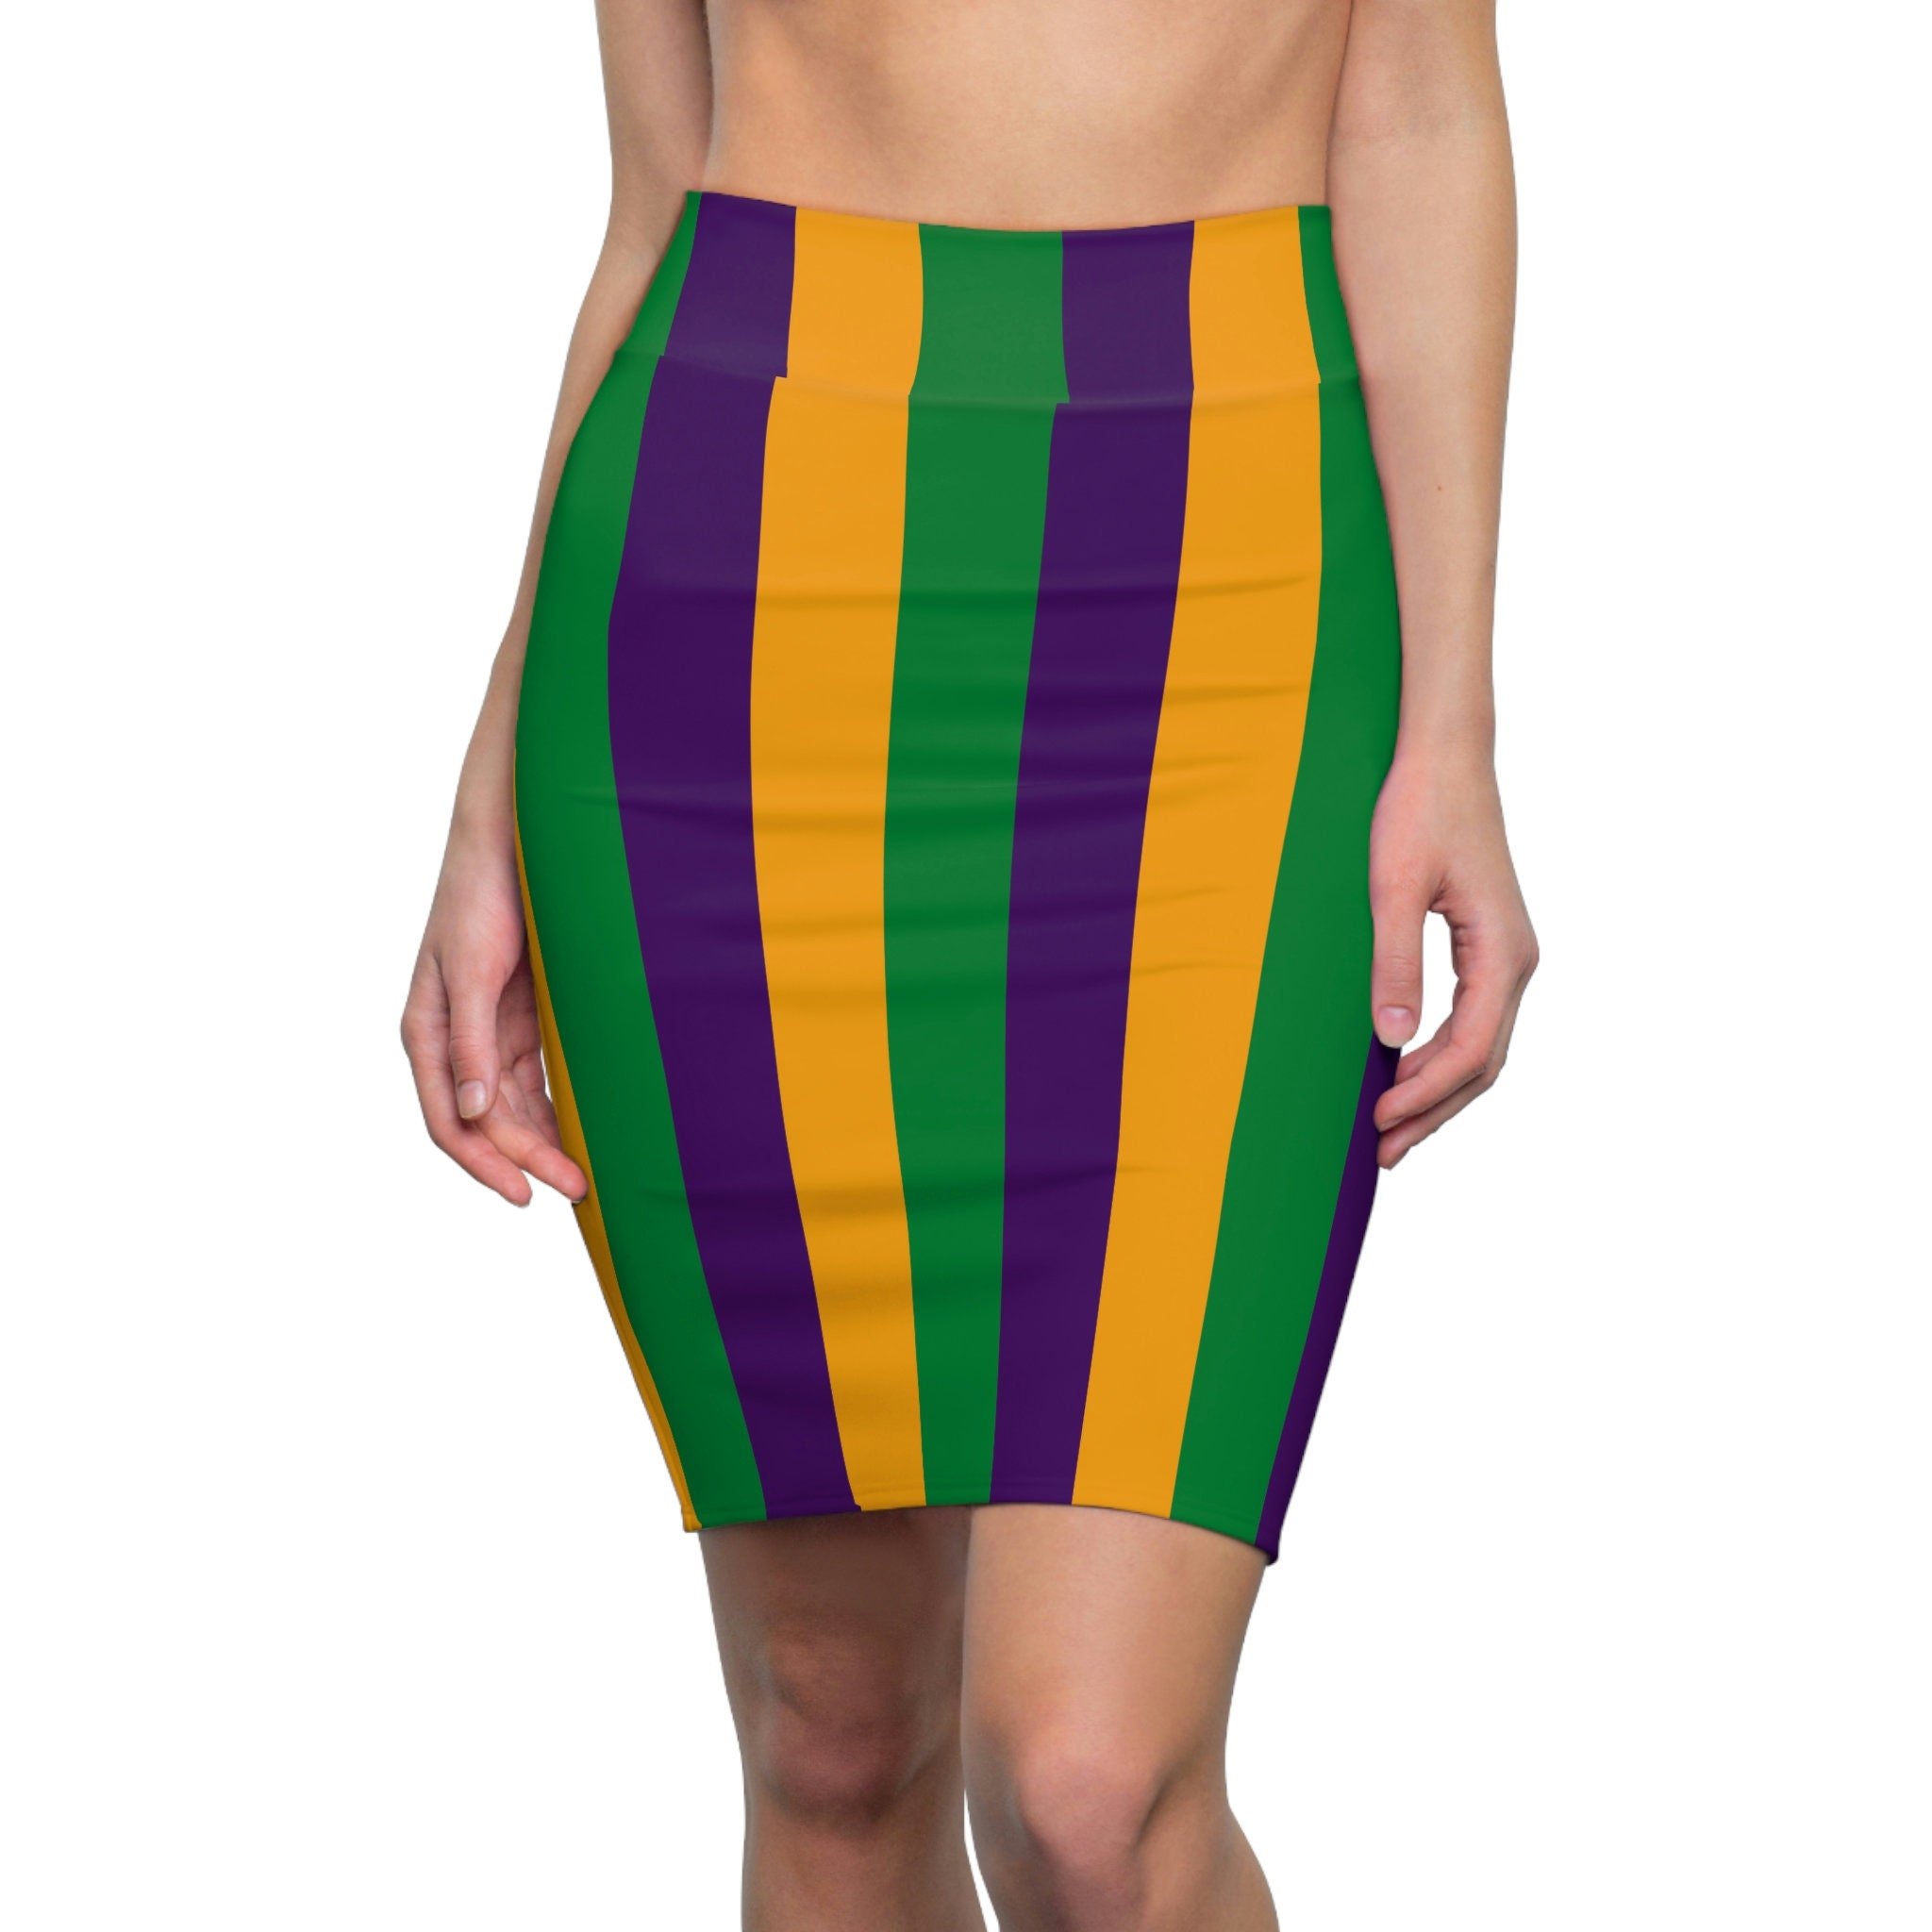 Mardi Gras Fringe Skirt – AnnaDean